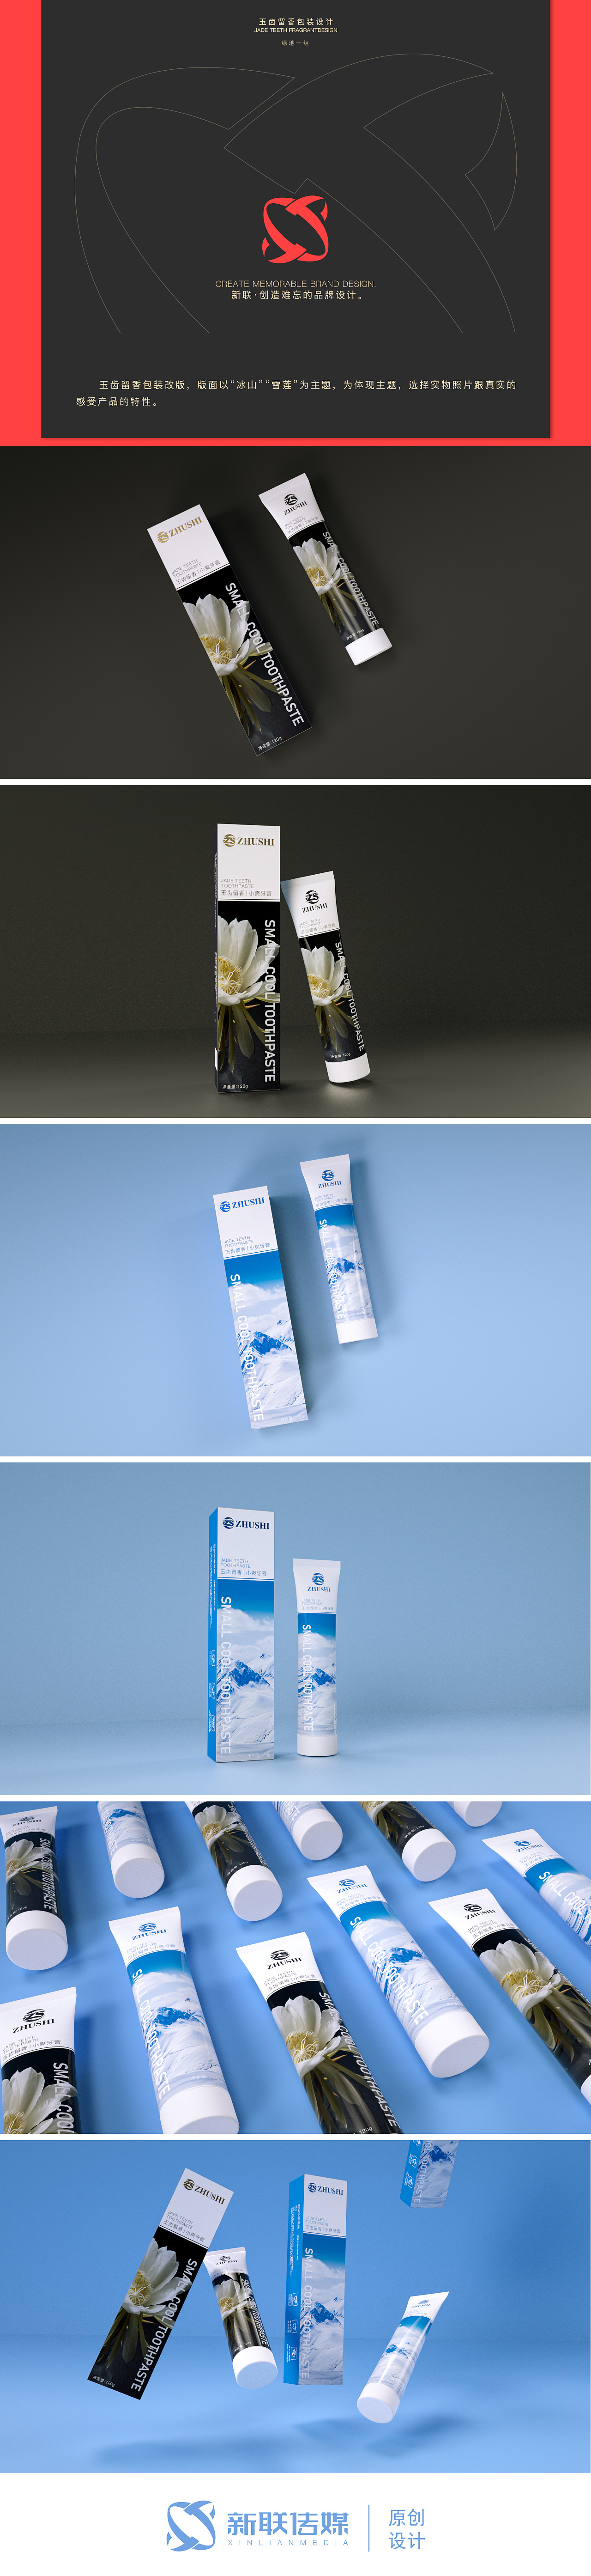 牙膏包装设计创新图片